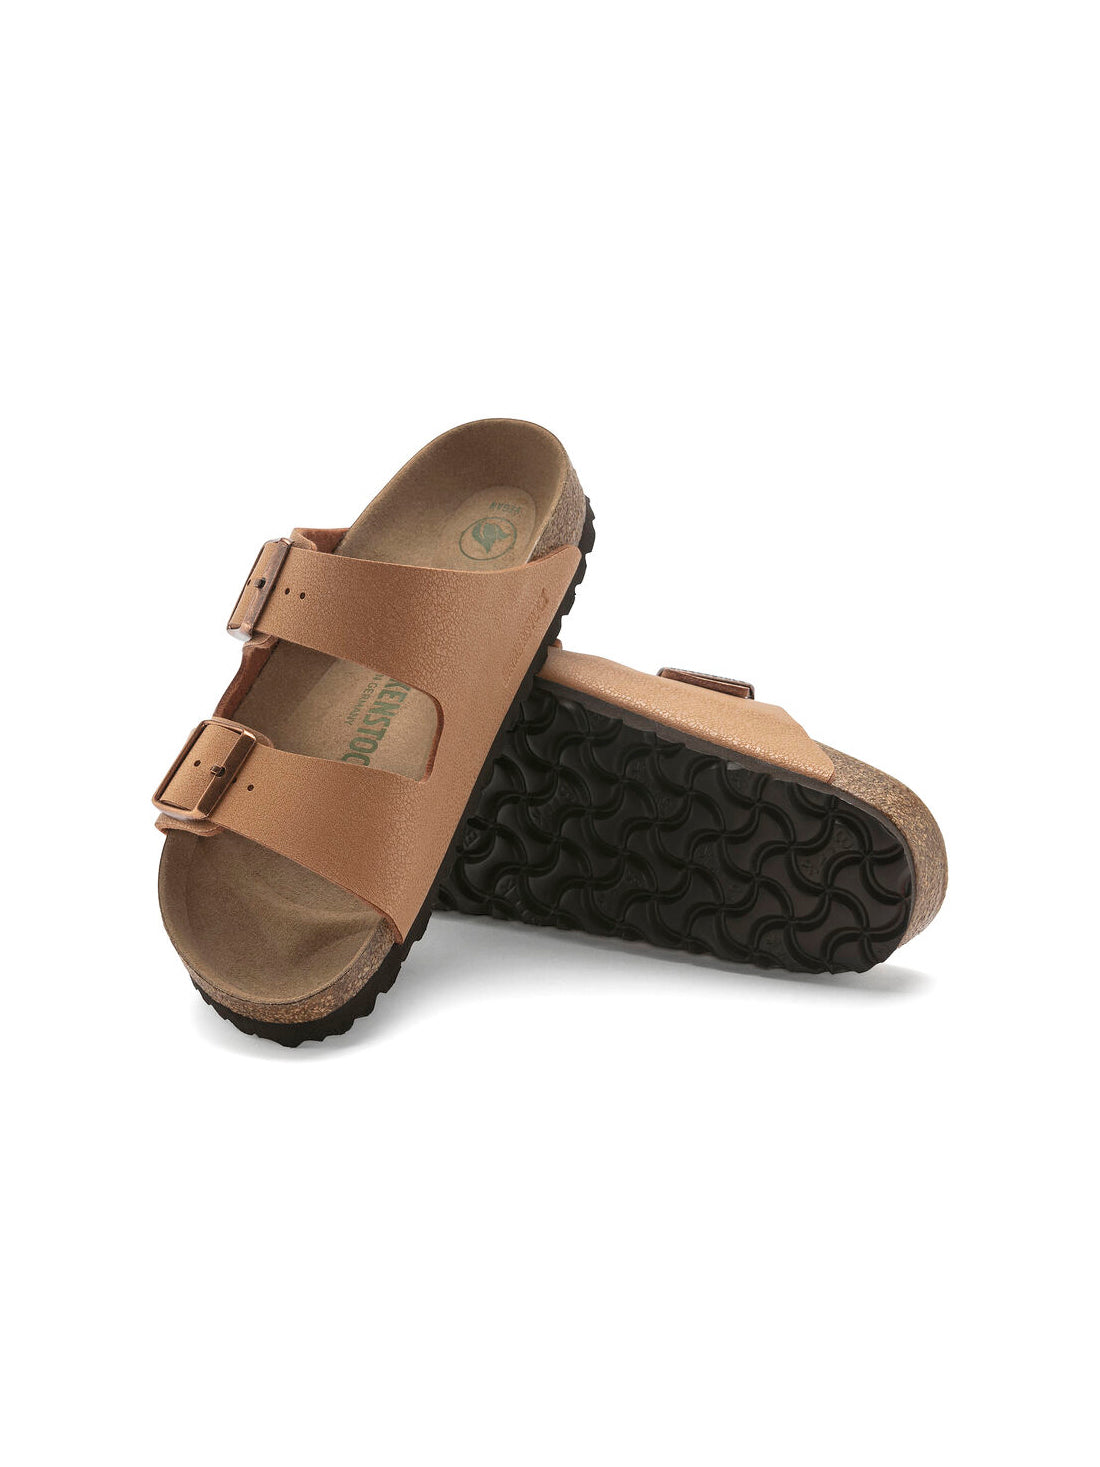 birkenstock arizona sandals in vegan birkibuc pecan narrow